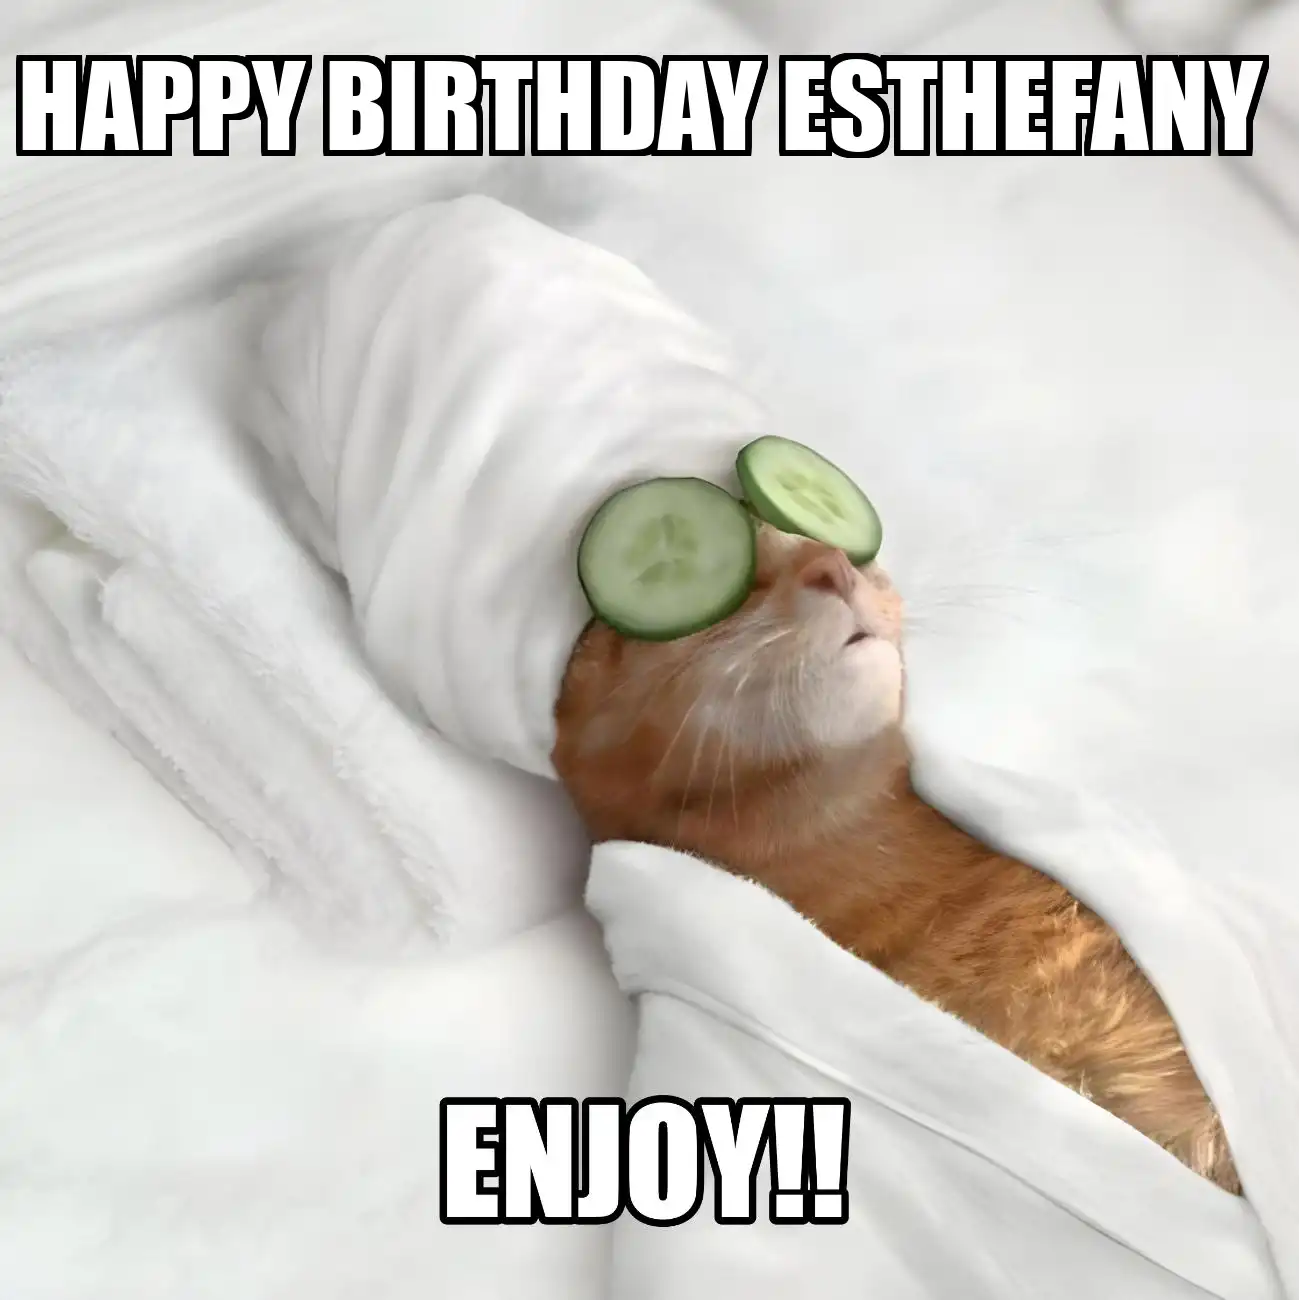 Happy Birthday Esthefany Enjoy Cat Meme